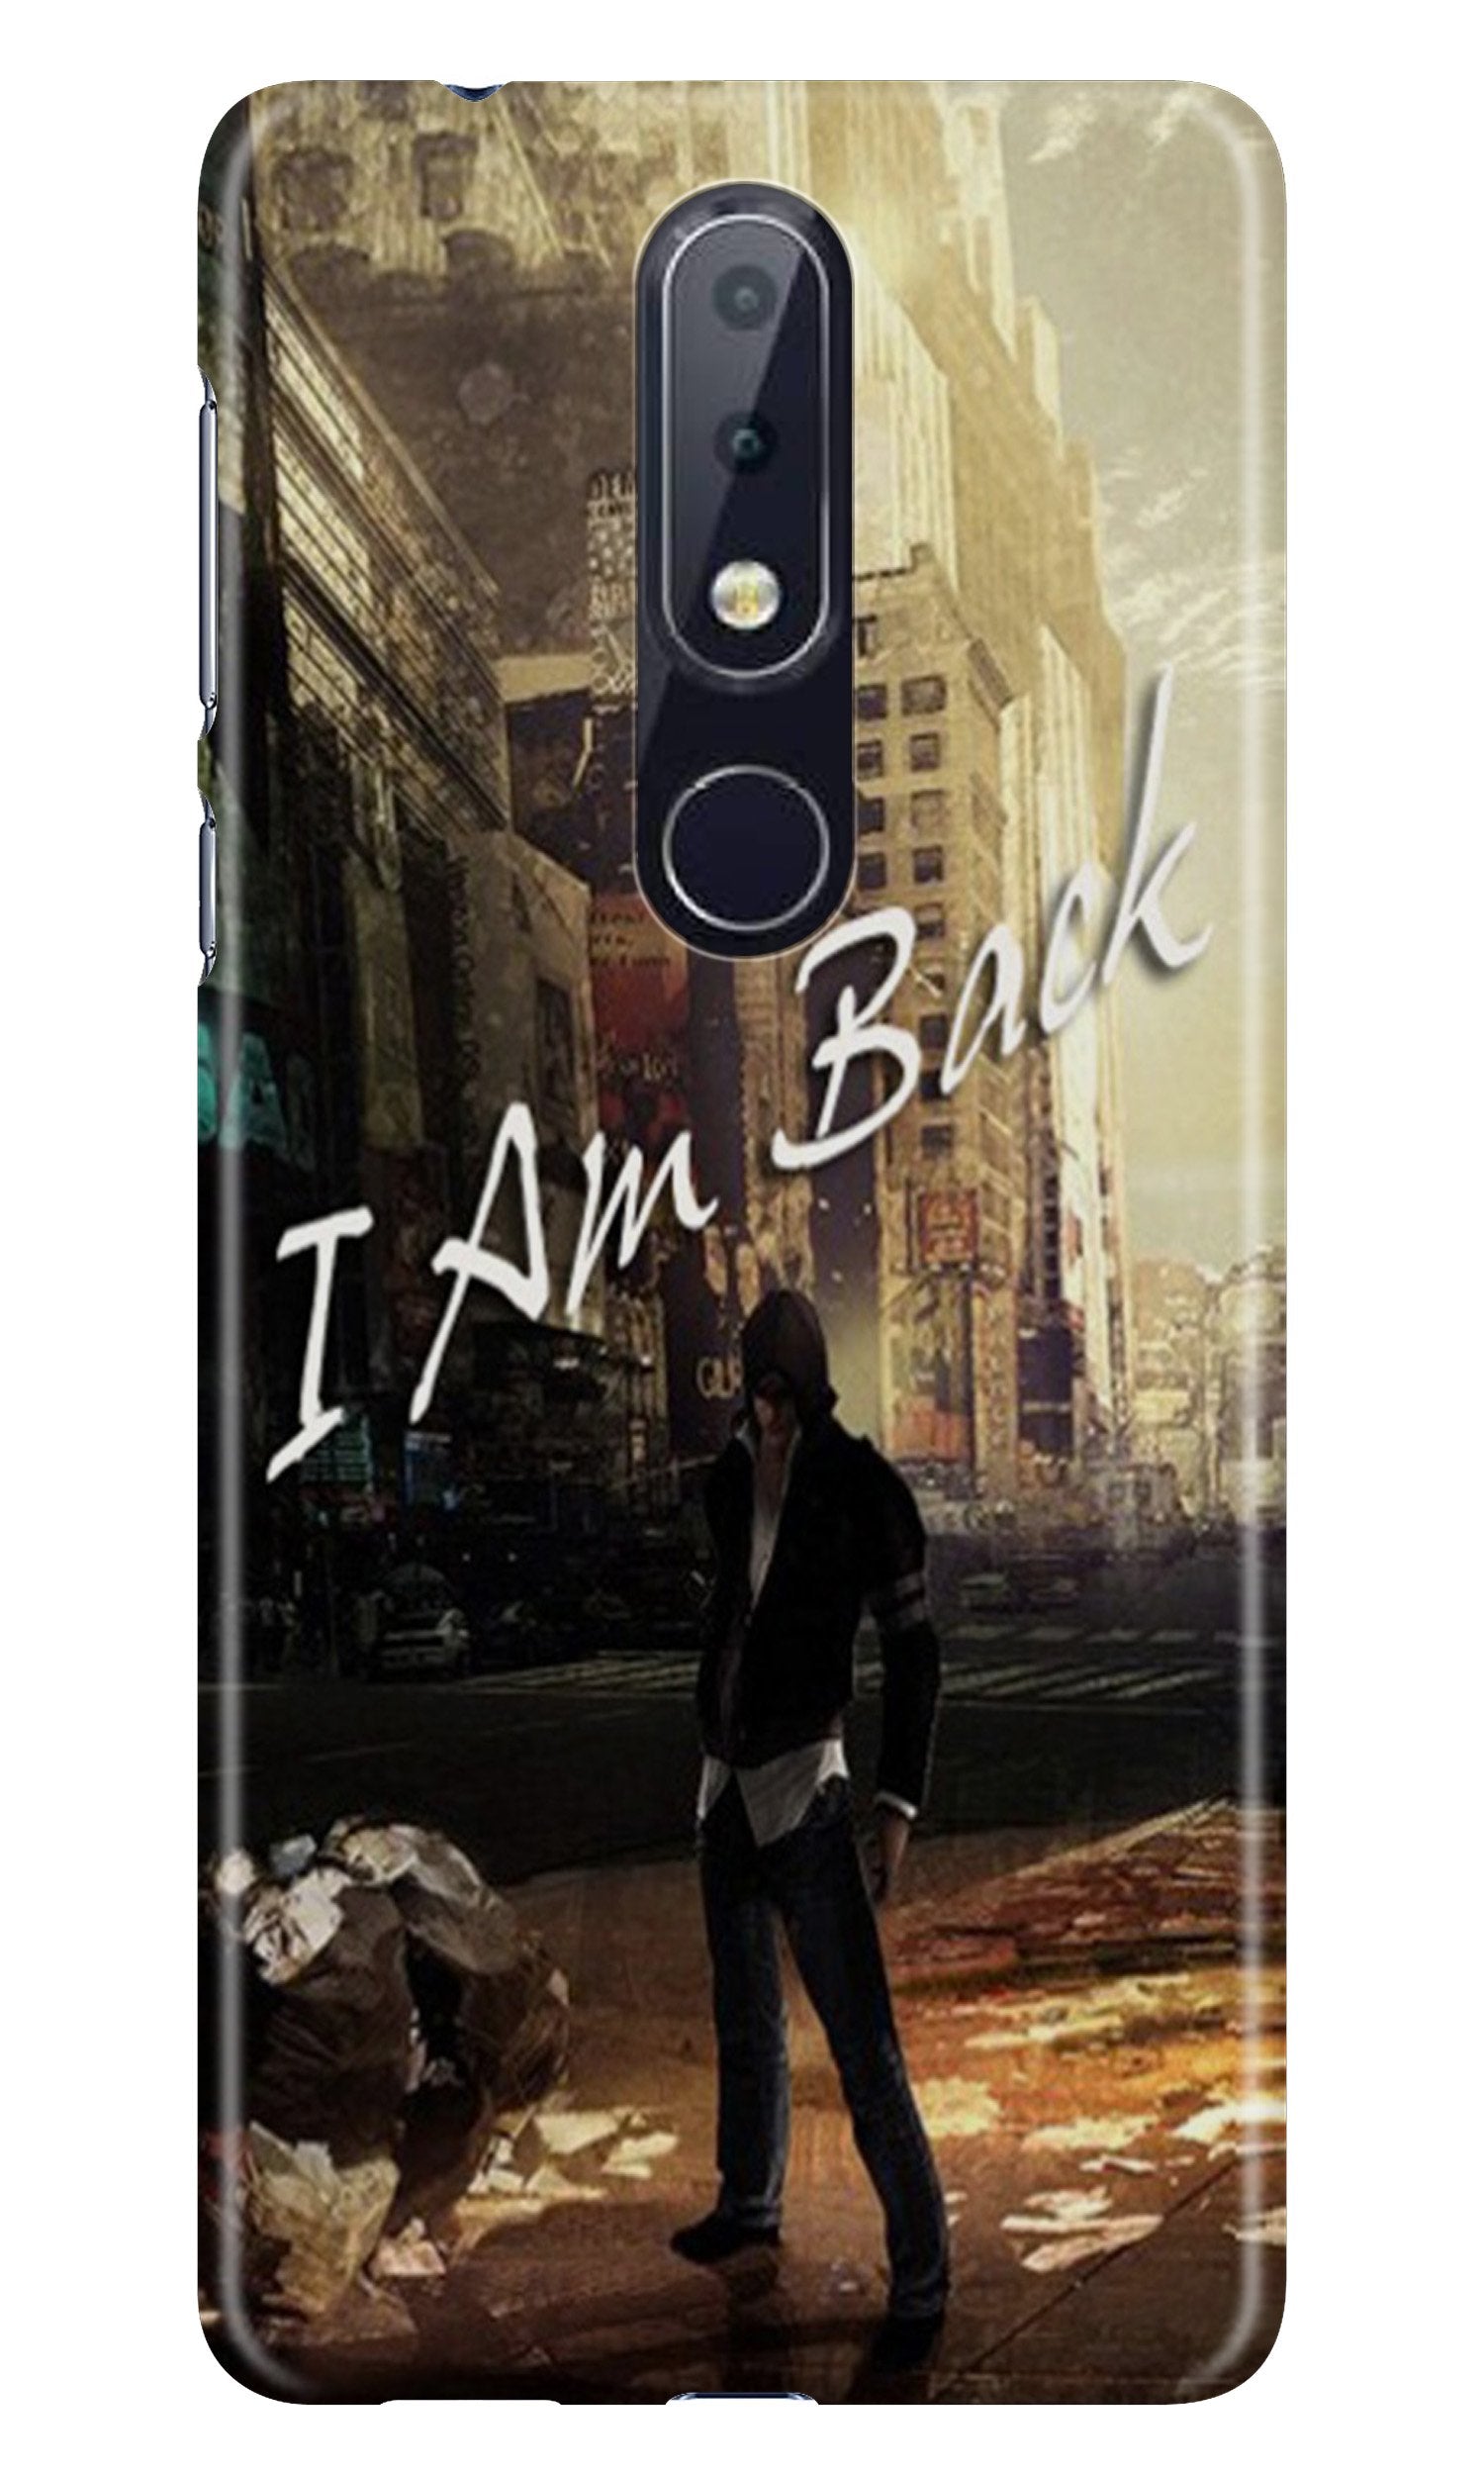 I am Back Case for Nokia 7.1 (Design No. 296)